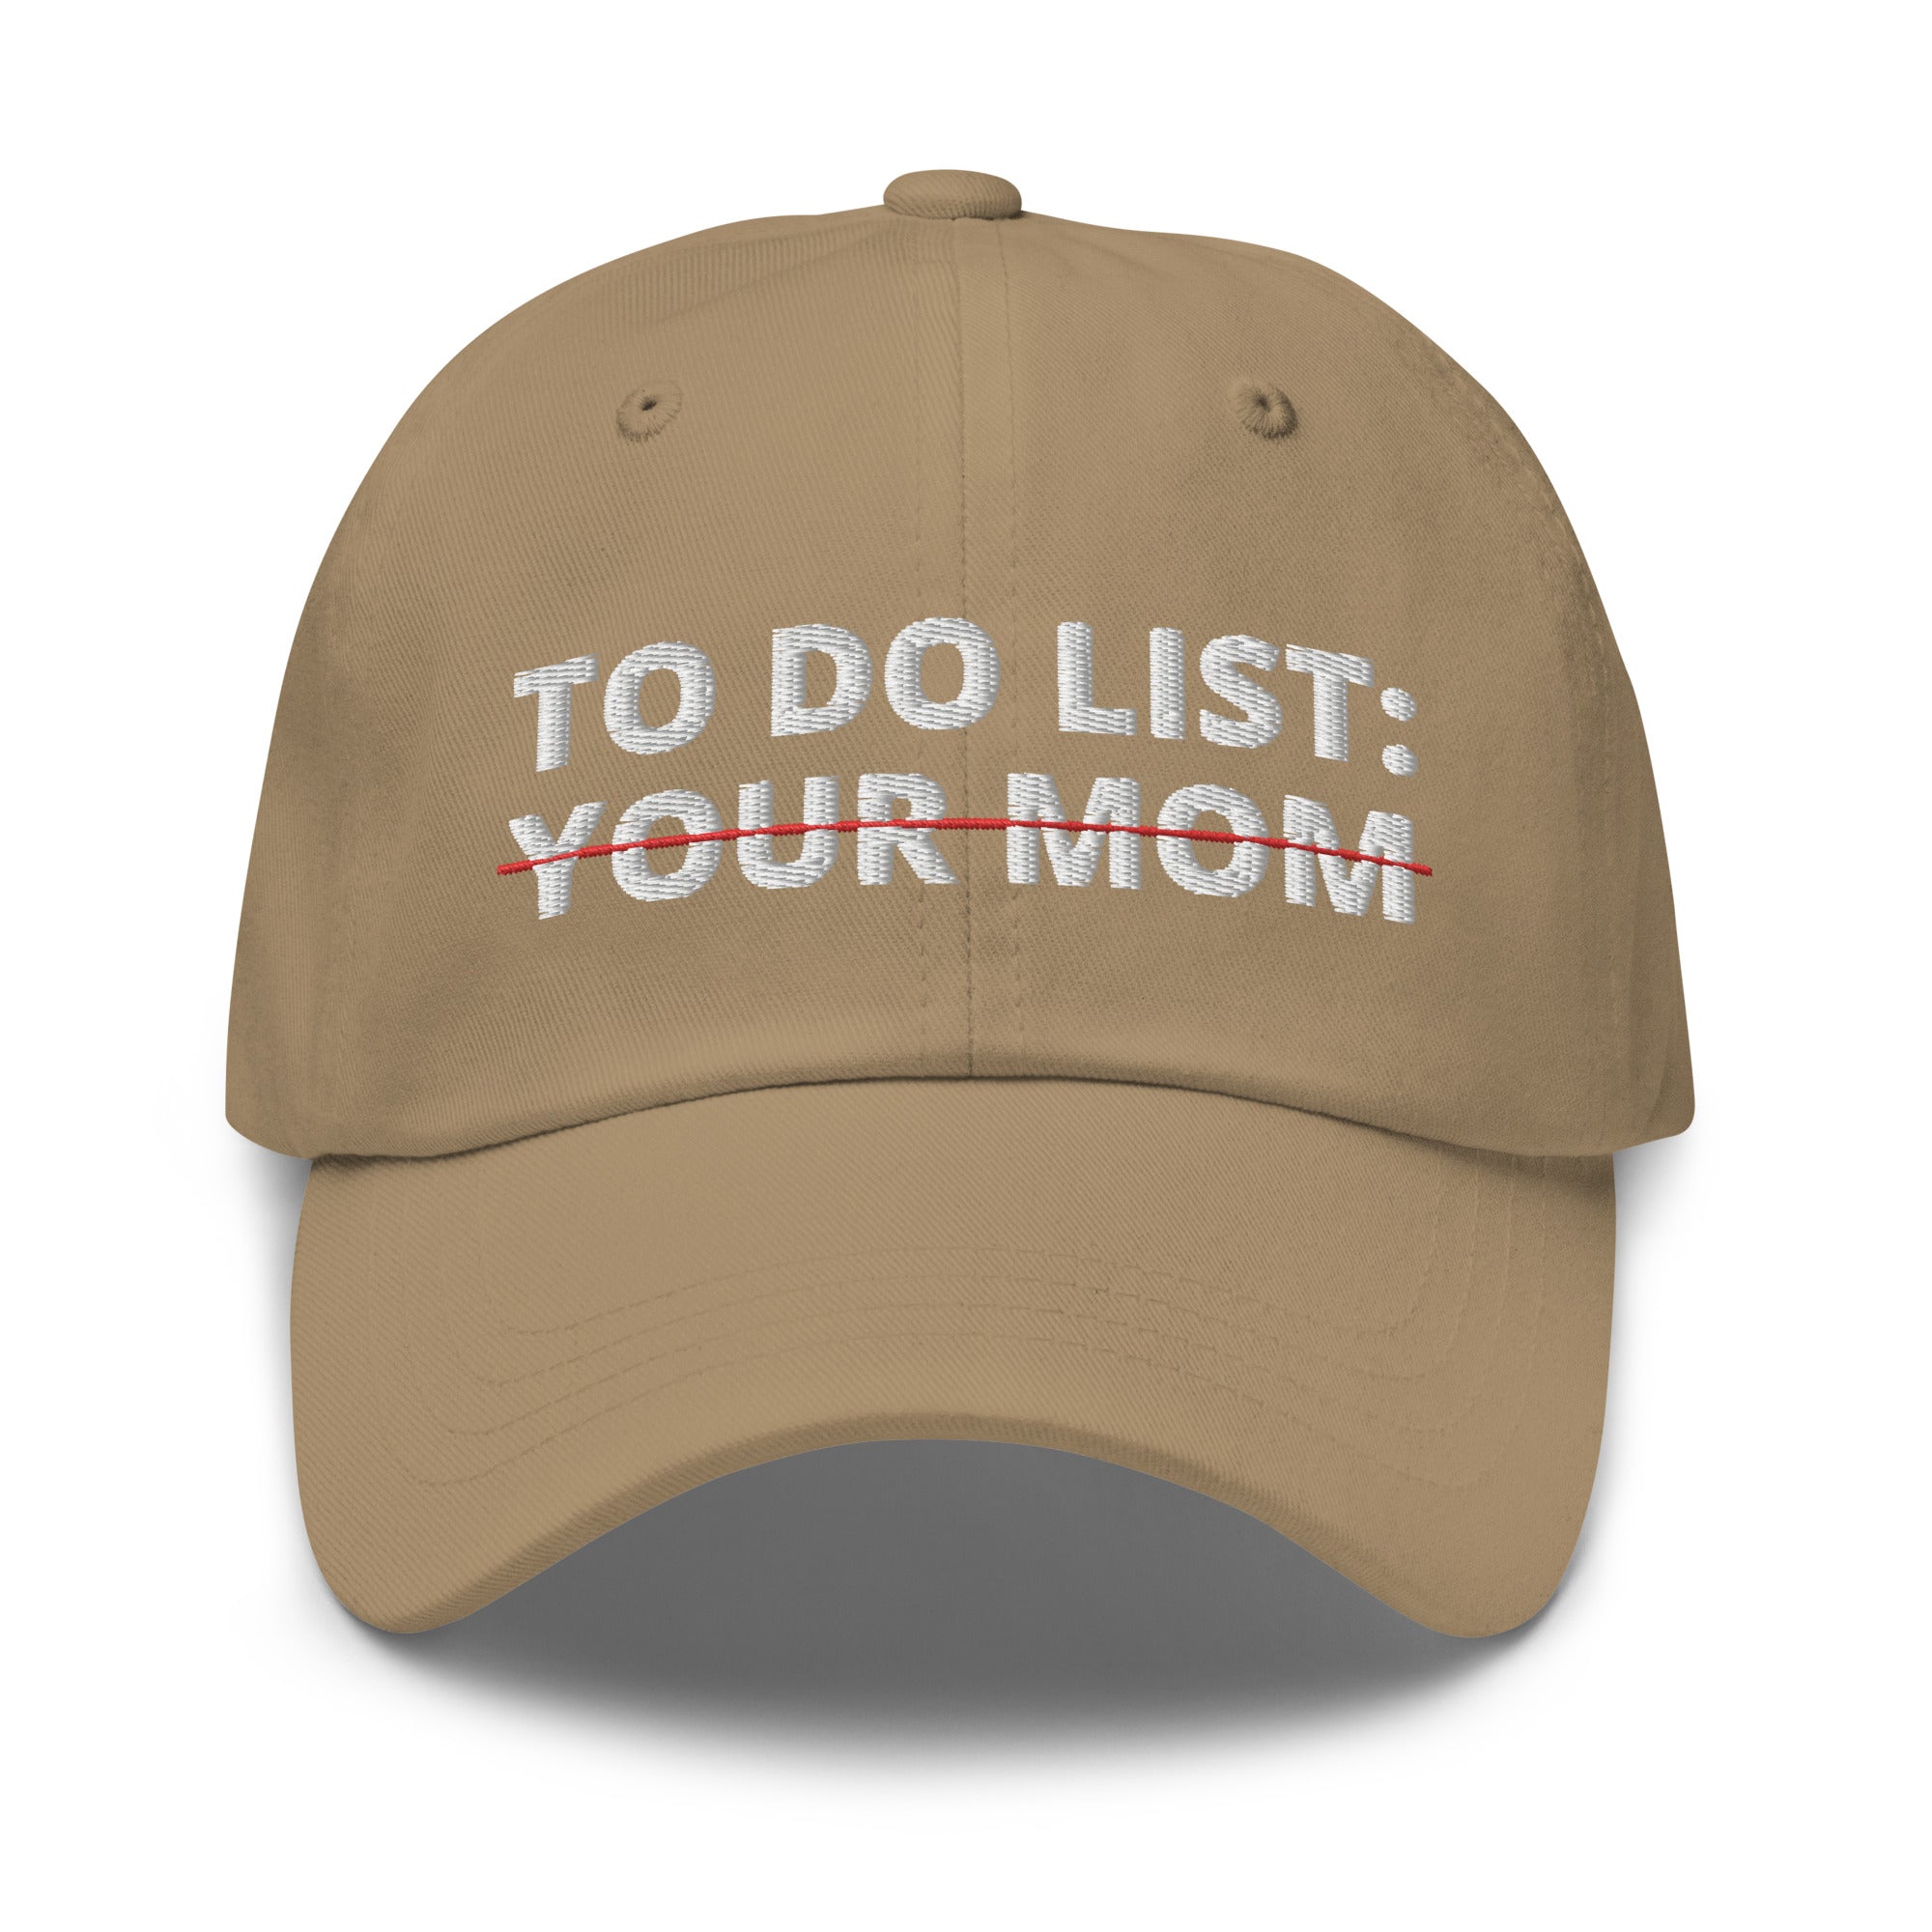 Lista de tareas pendientes de su sombrero de mamá, lista de tareas divertidas, lista de tareas sarcásticas, regalos sarcásticos, sombrero de humor para adultos, gorra de su mamá, chistes divertidos de mamá, sombreros divertidos